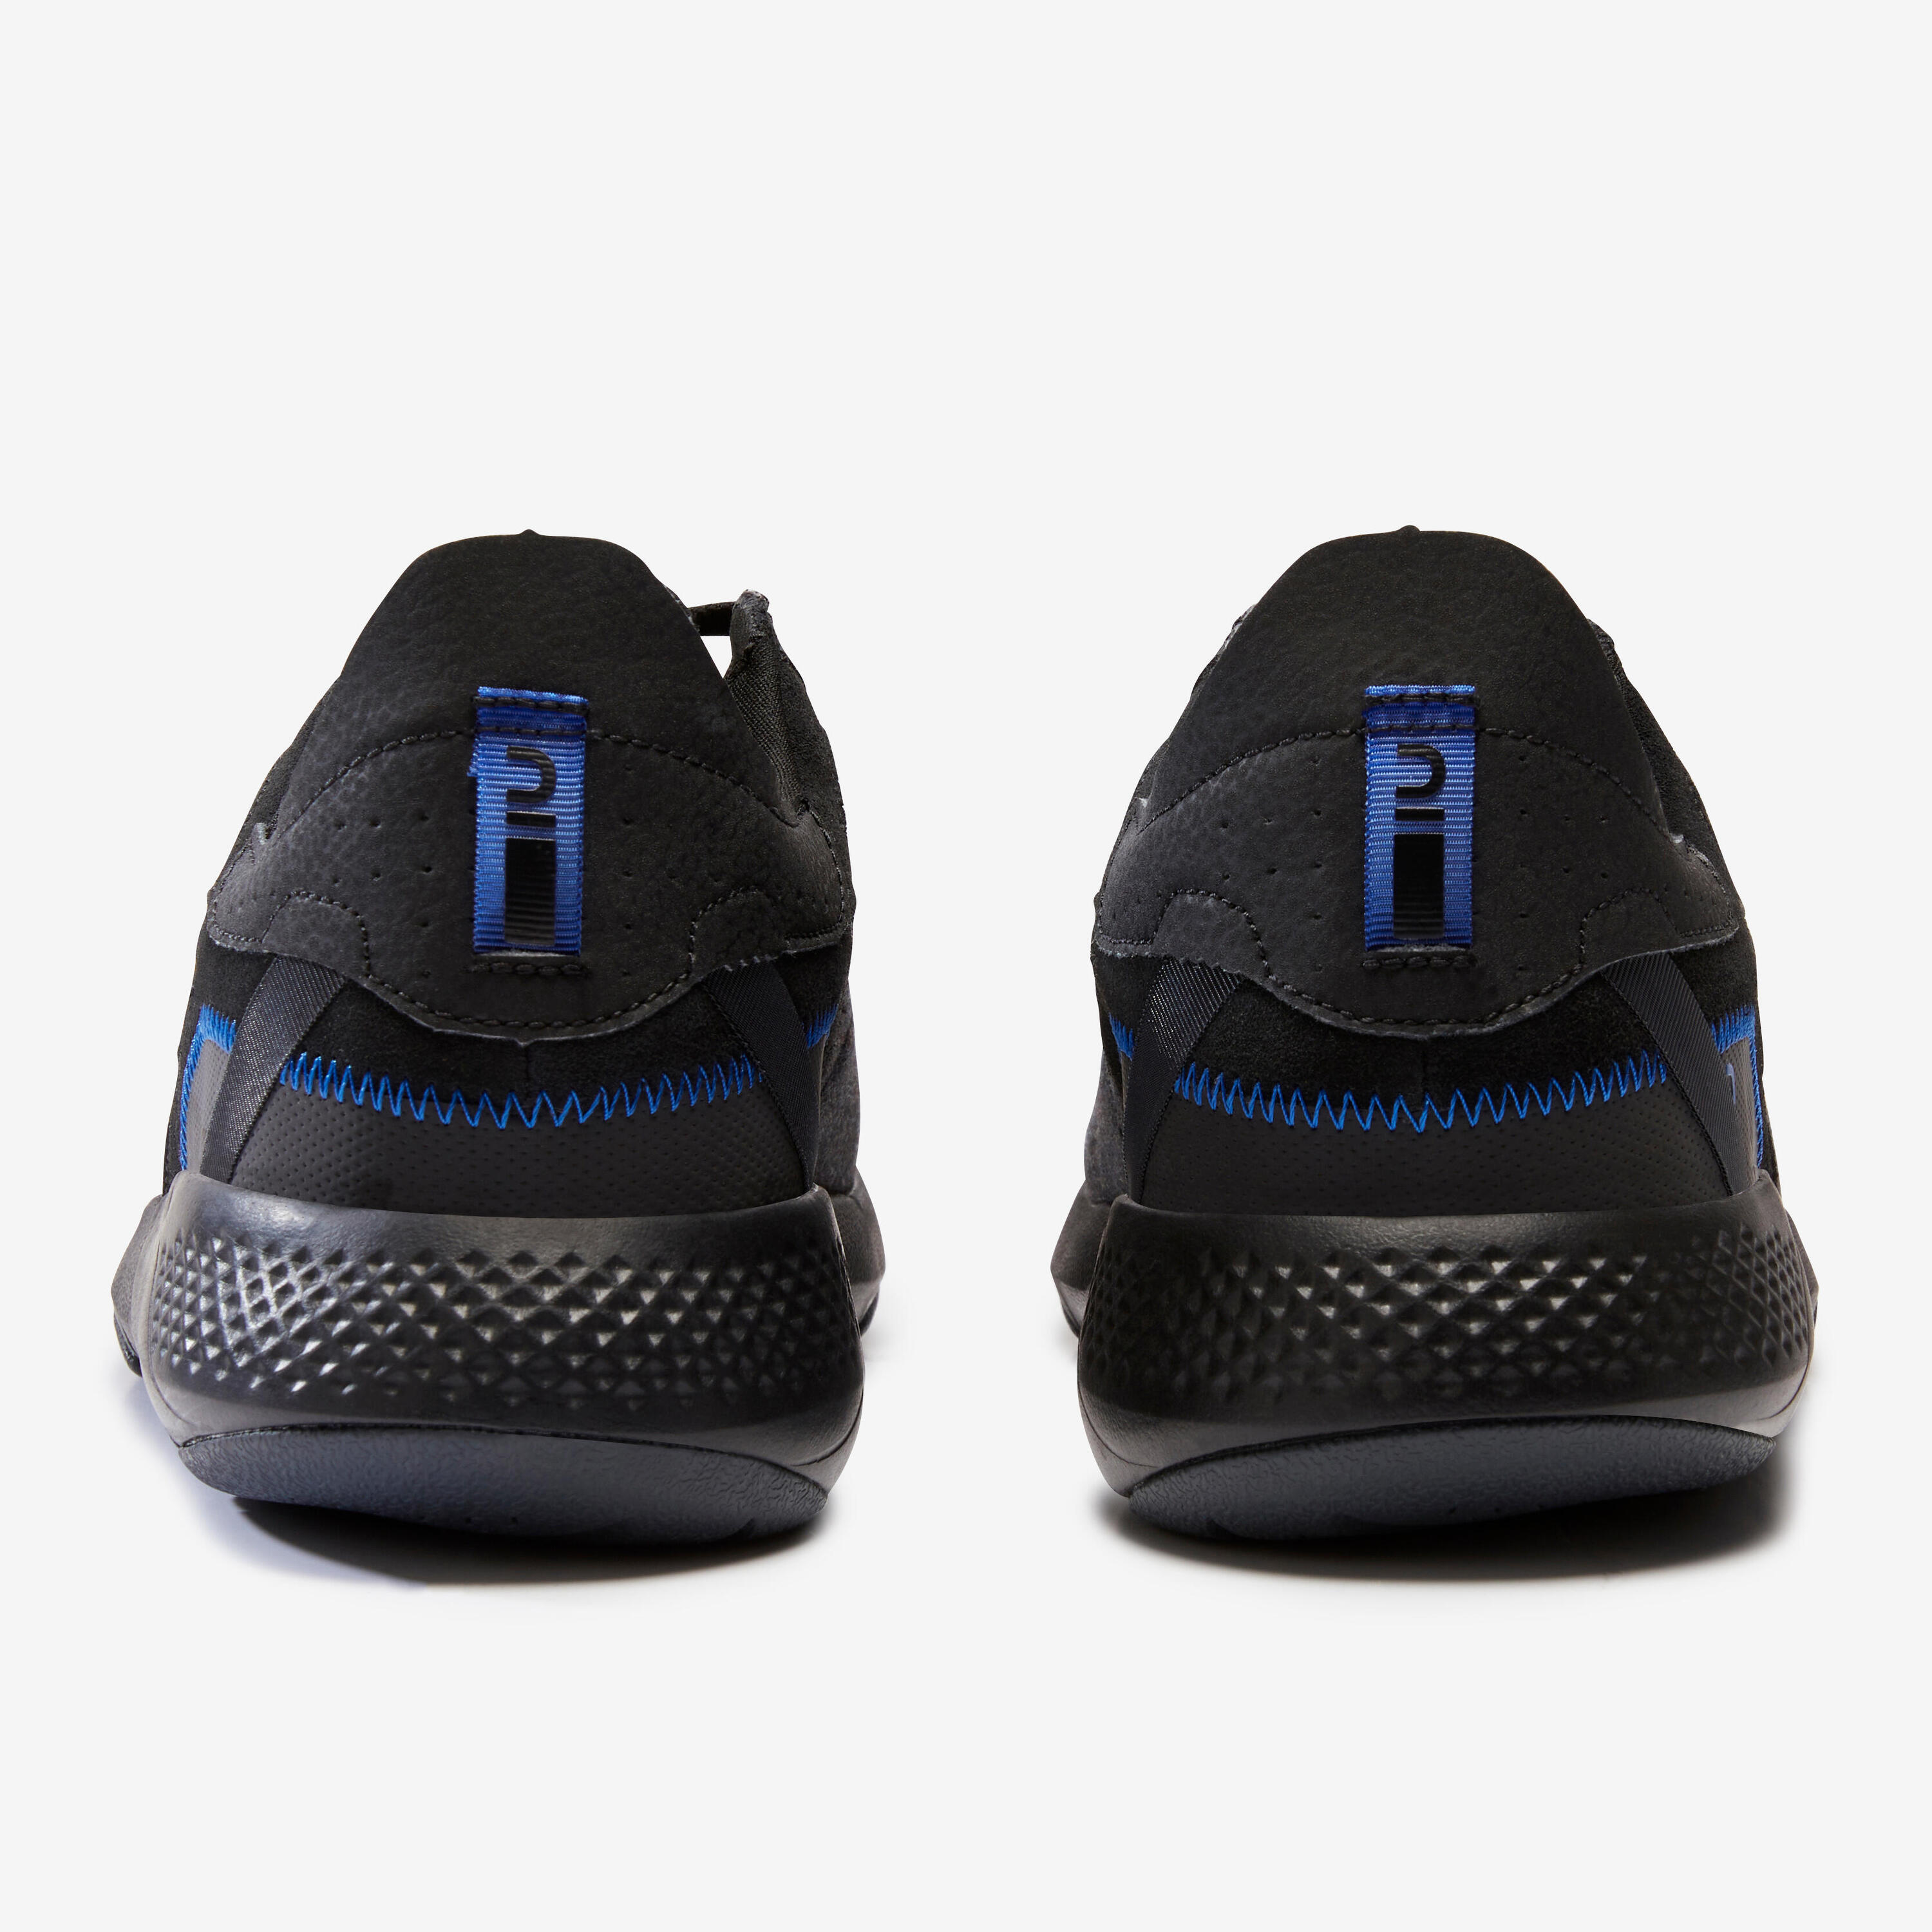 Men's Urban Walking Shoes Actiwalk 500 - black 6/8